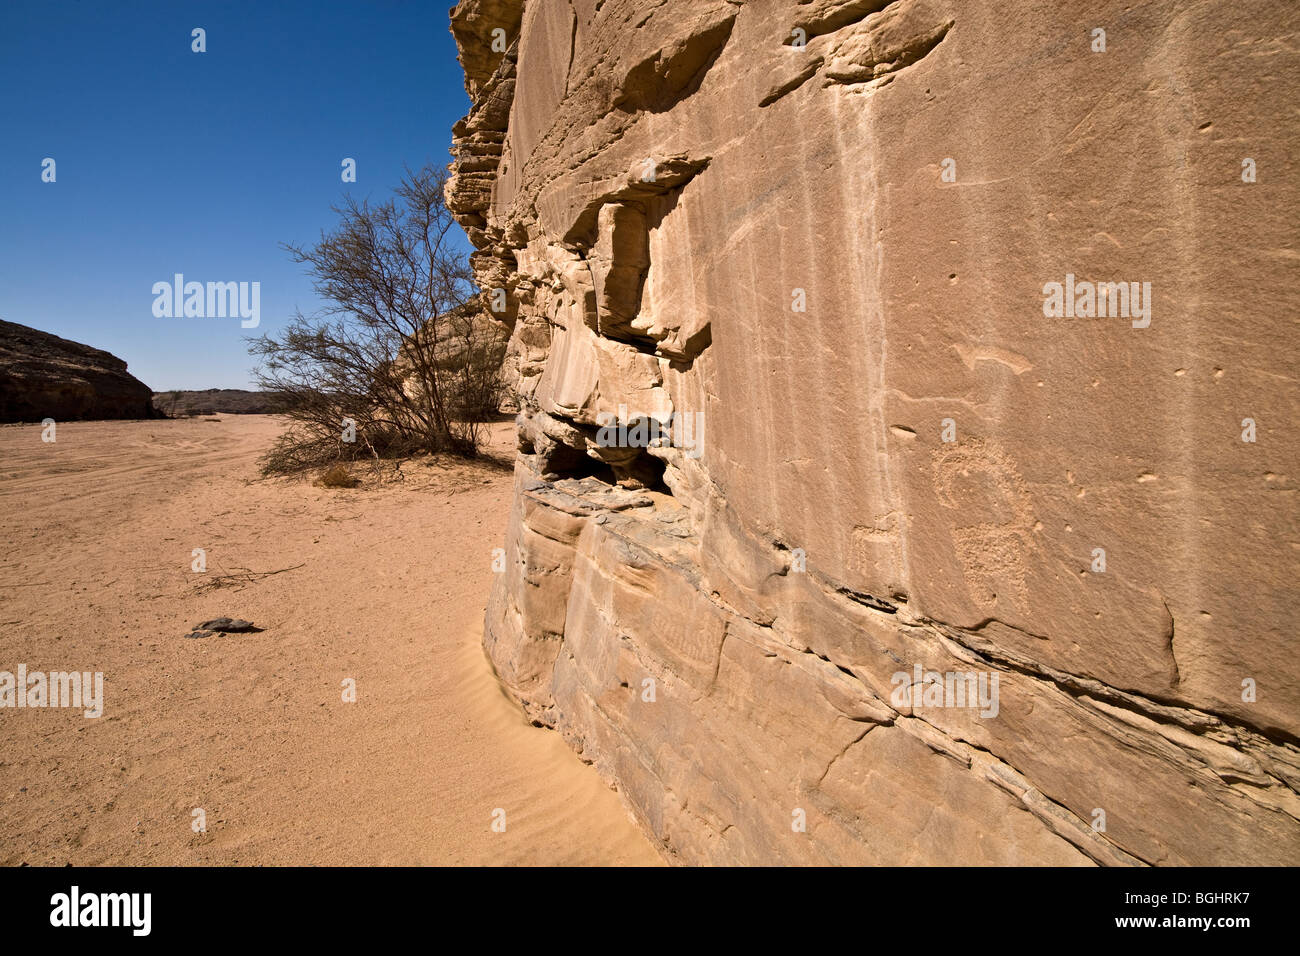 Wadi marbre montrant rock face et Art rupestre antique dans le désert oriental d'Égypte. Banque D'Images